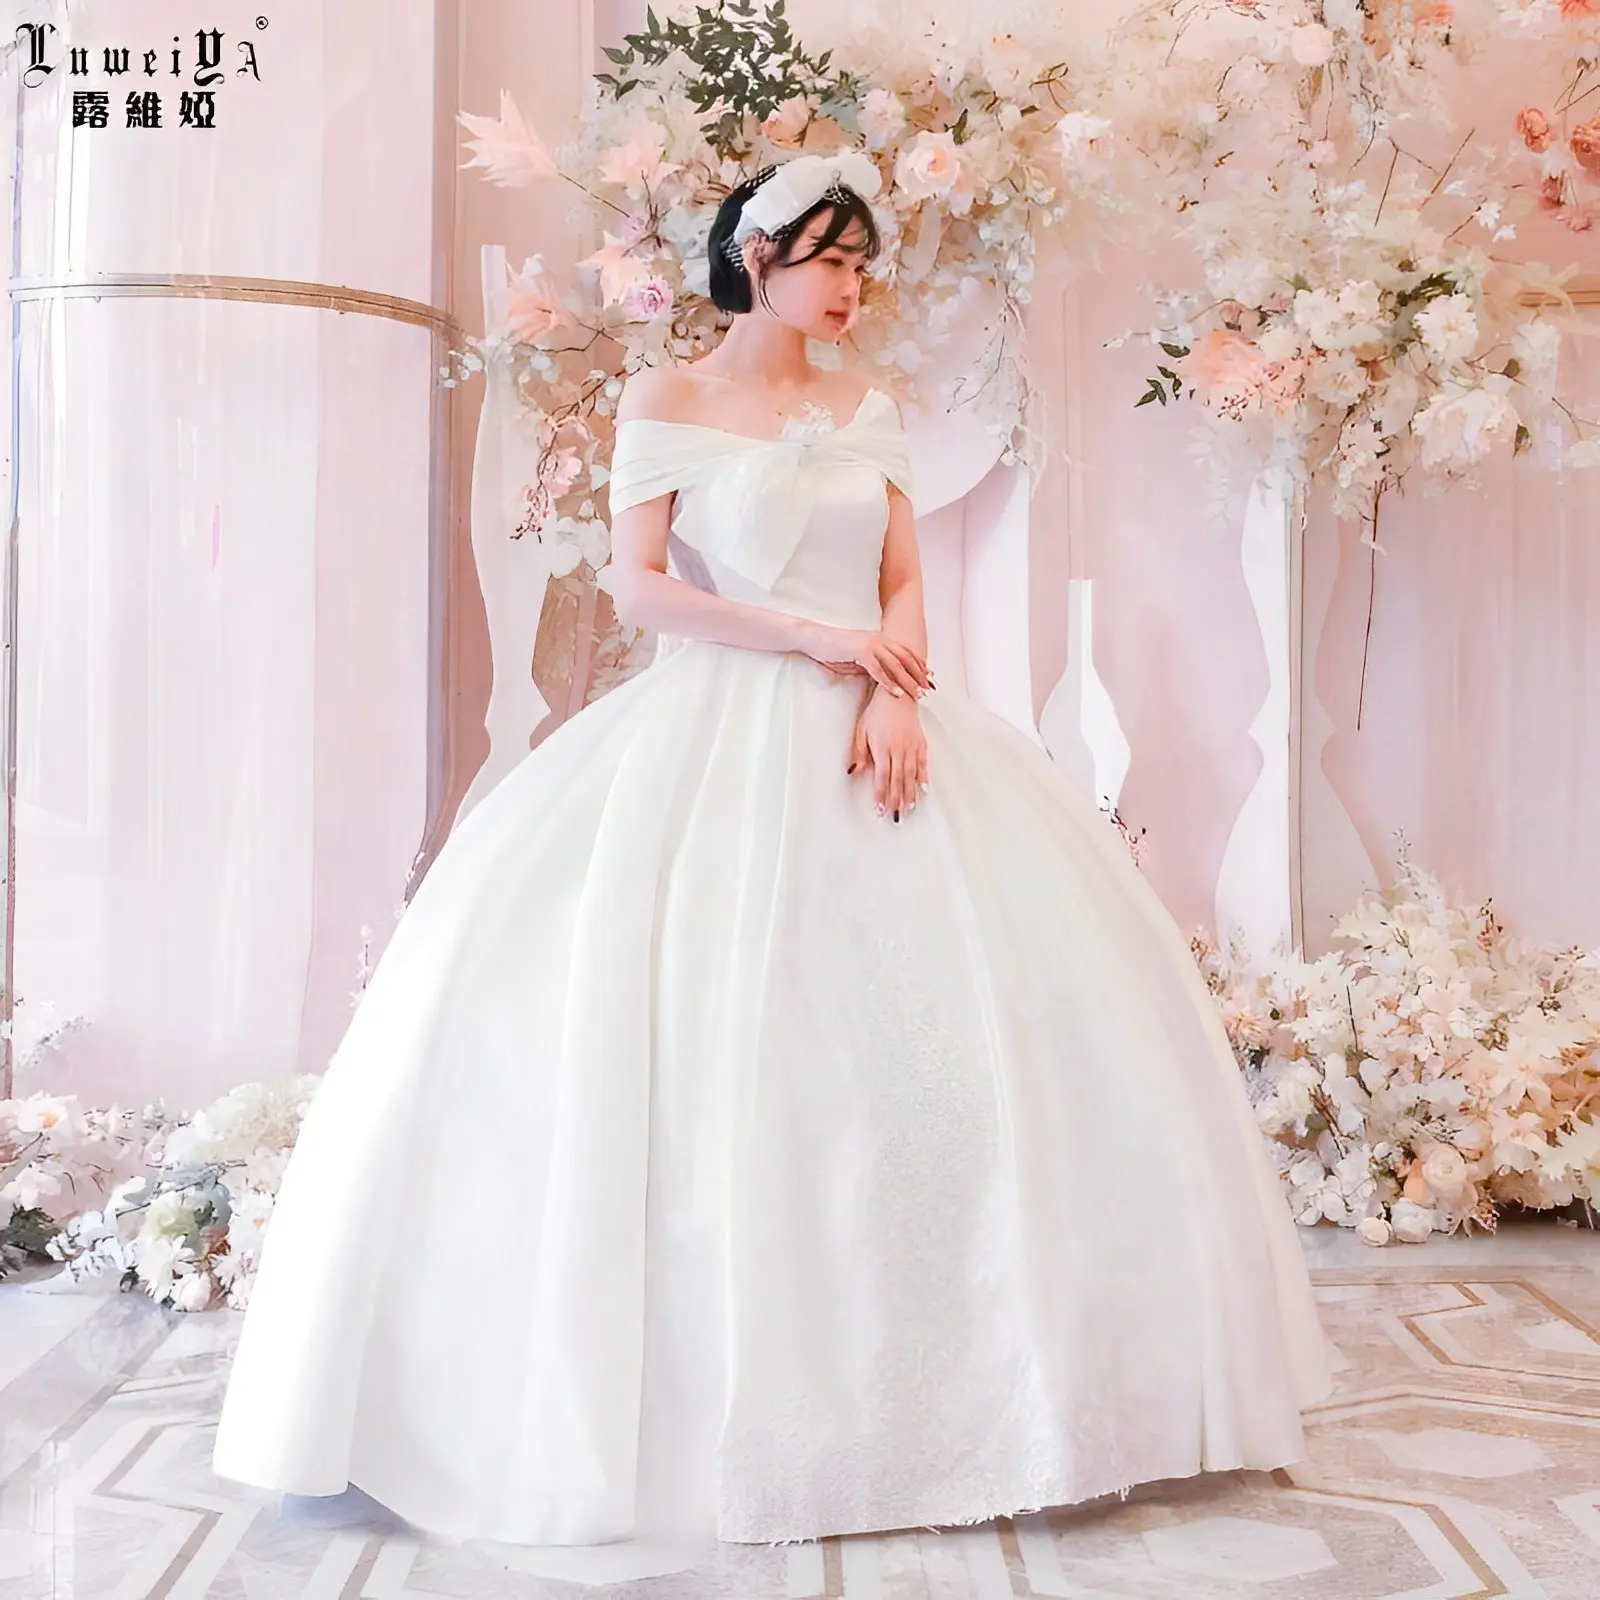 LUWEIYA Wedding Dresses For Women Wedding Gown With Train Long Sleeves Plus Size Bride Mermaid Wedding Dress Bridal Gowns